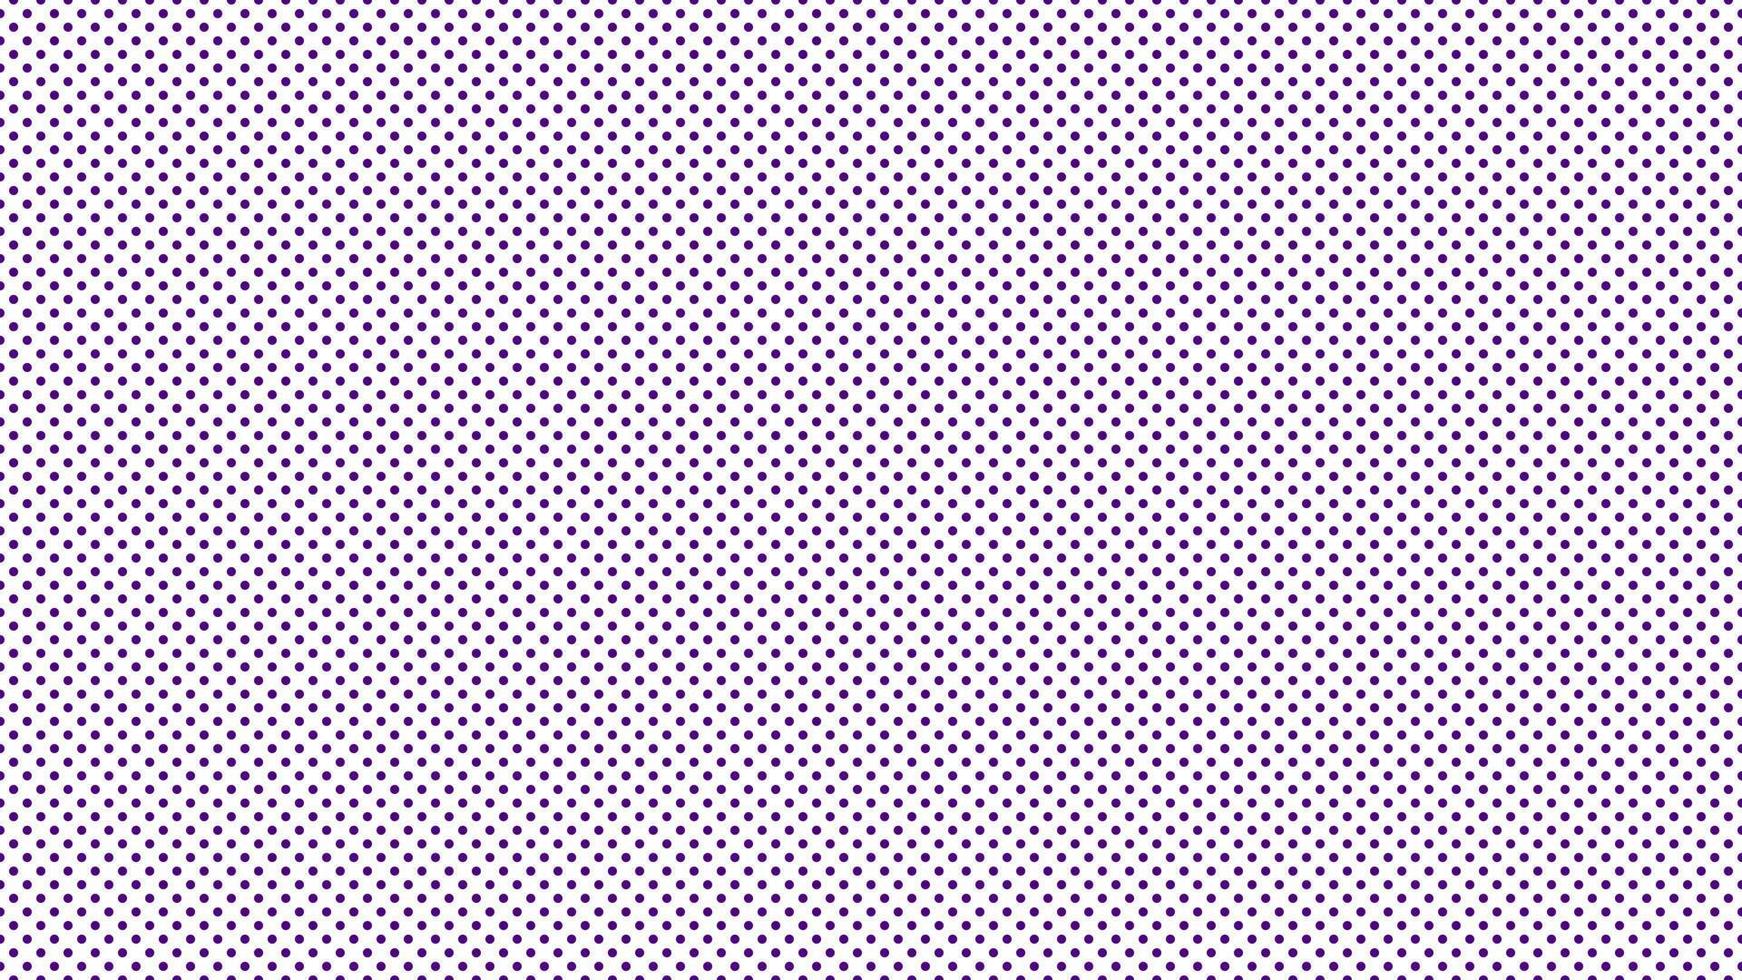 indigo purple color polka dots background vector